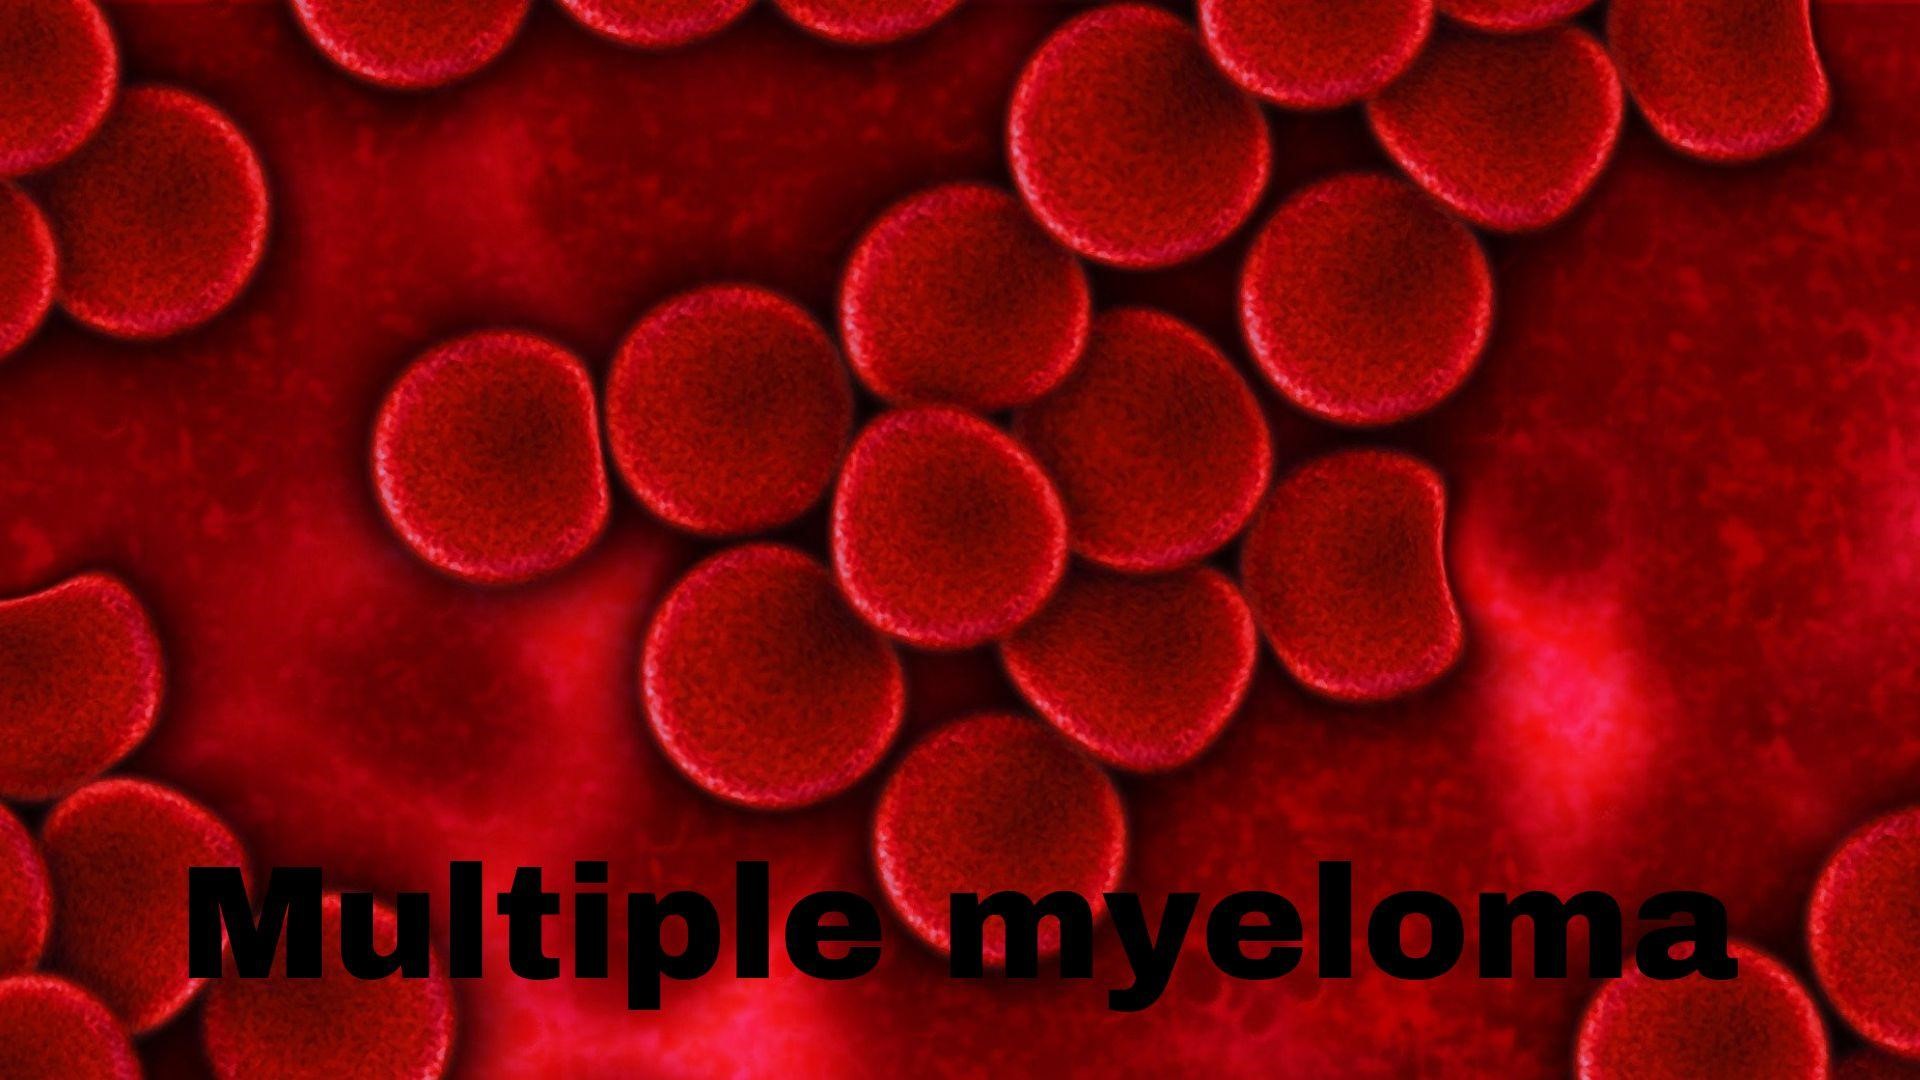 Multiple myeloma